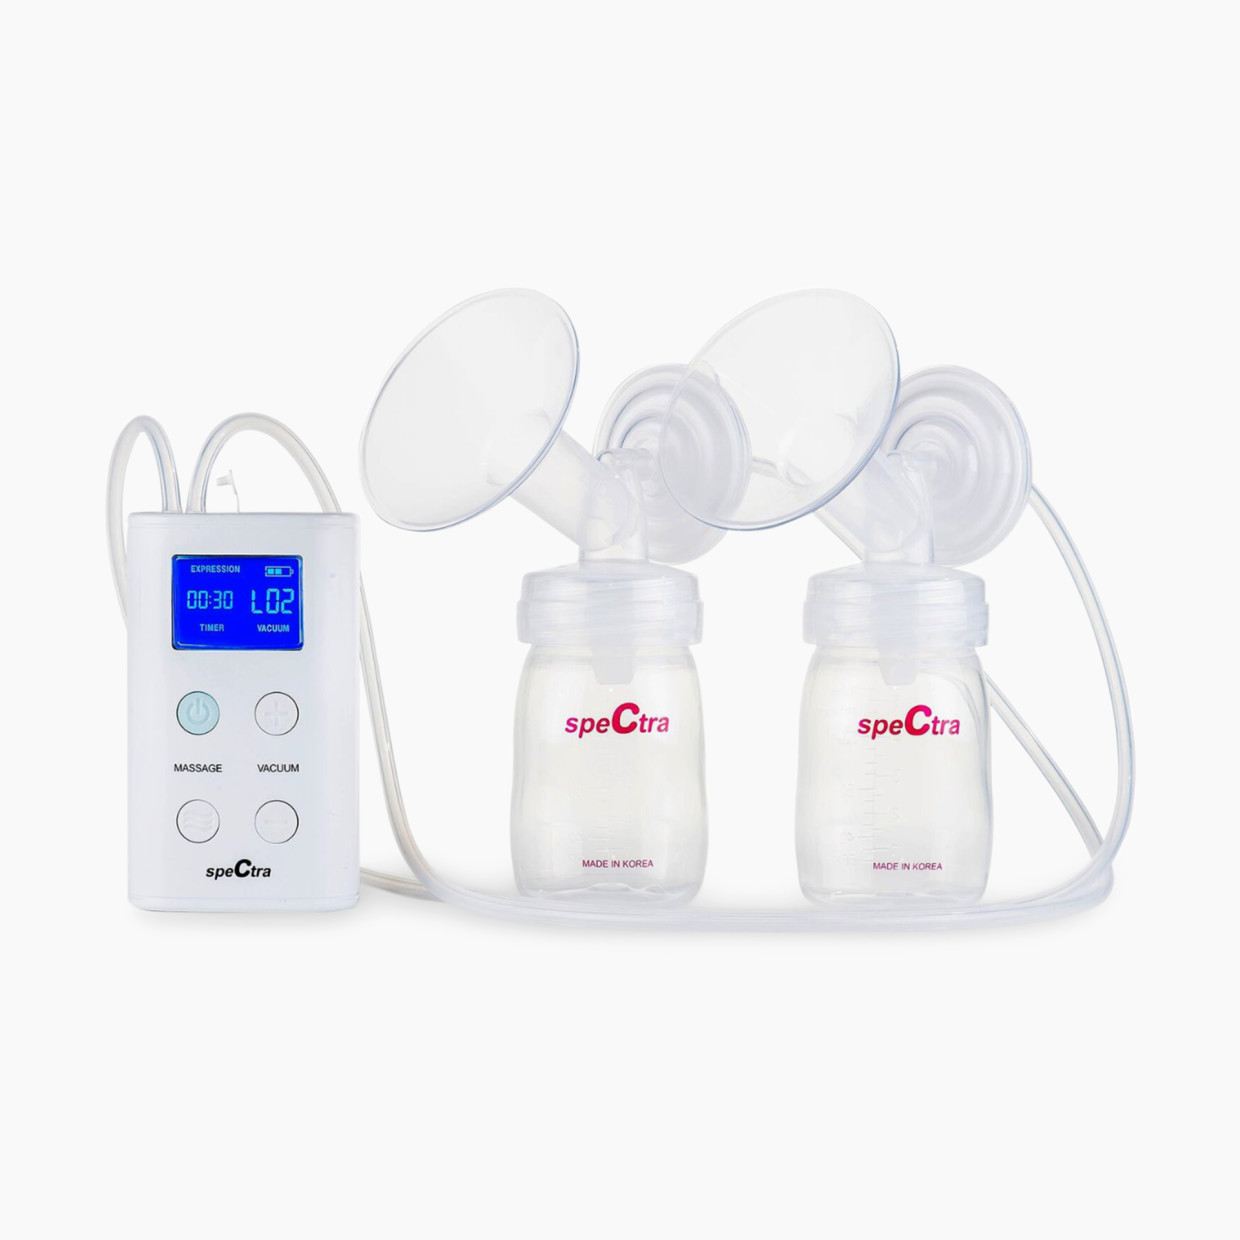 Spectra 9 Plus Premier Portable Rechargeable Breast Pump - White